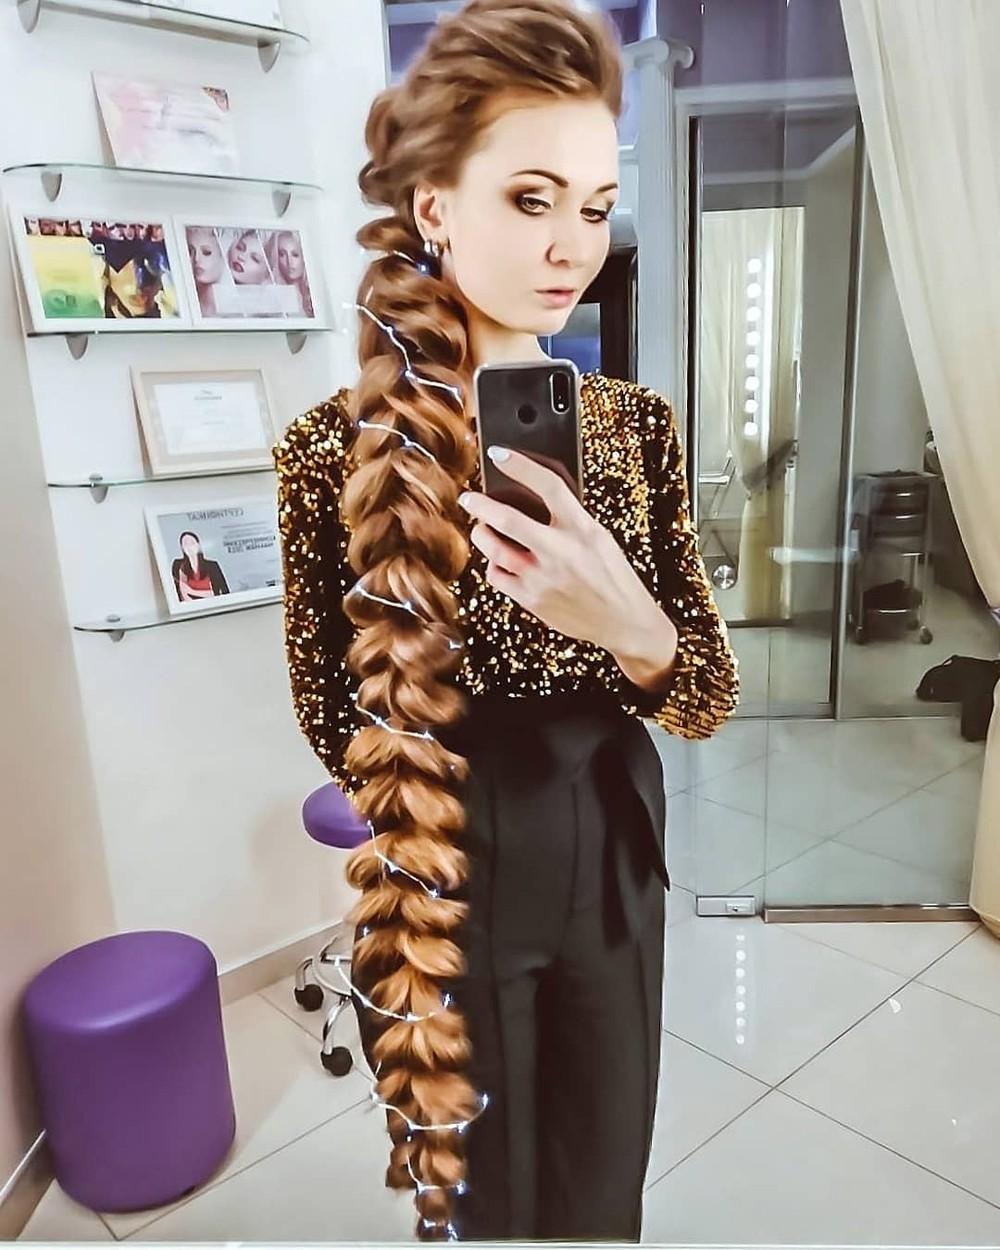 Daria Gubanova cu părul prins în coadă împletiită, îmbrăcată în negru